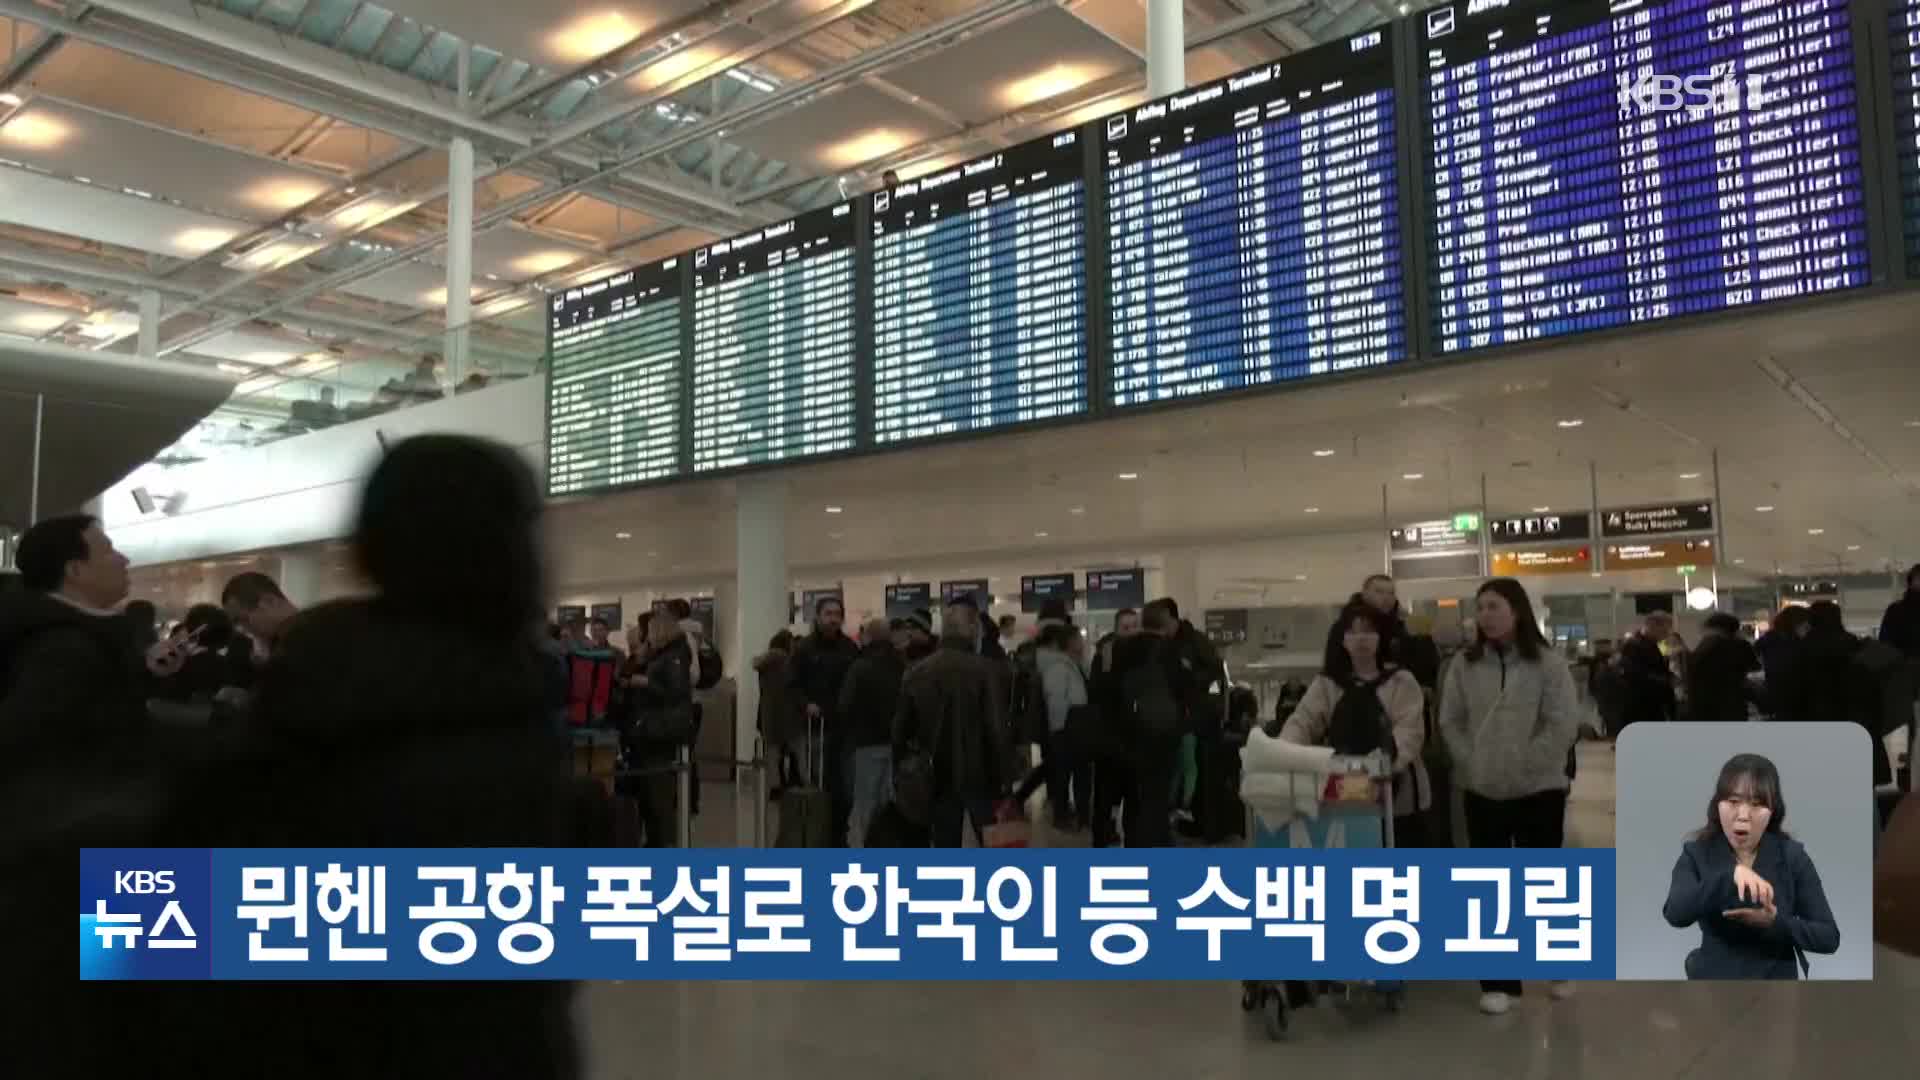 뮌헨 공항 폭설로 한국인 등 수백 명 고립